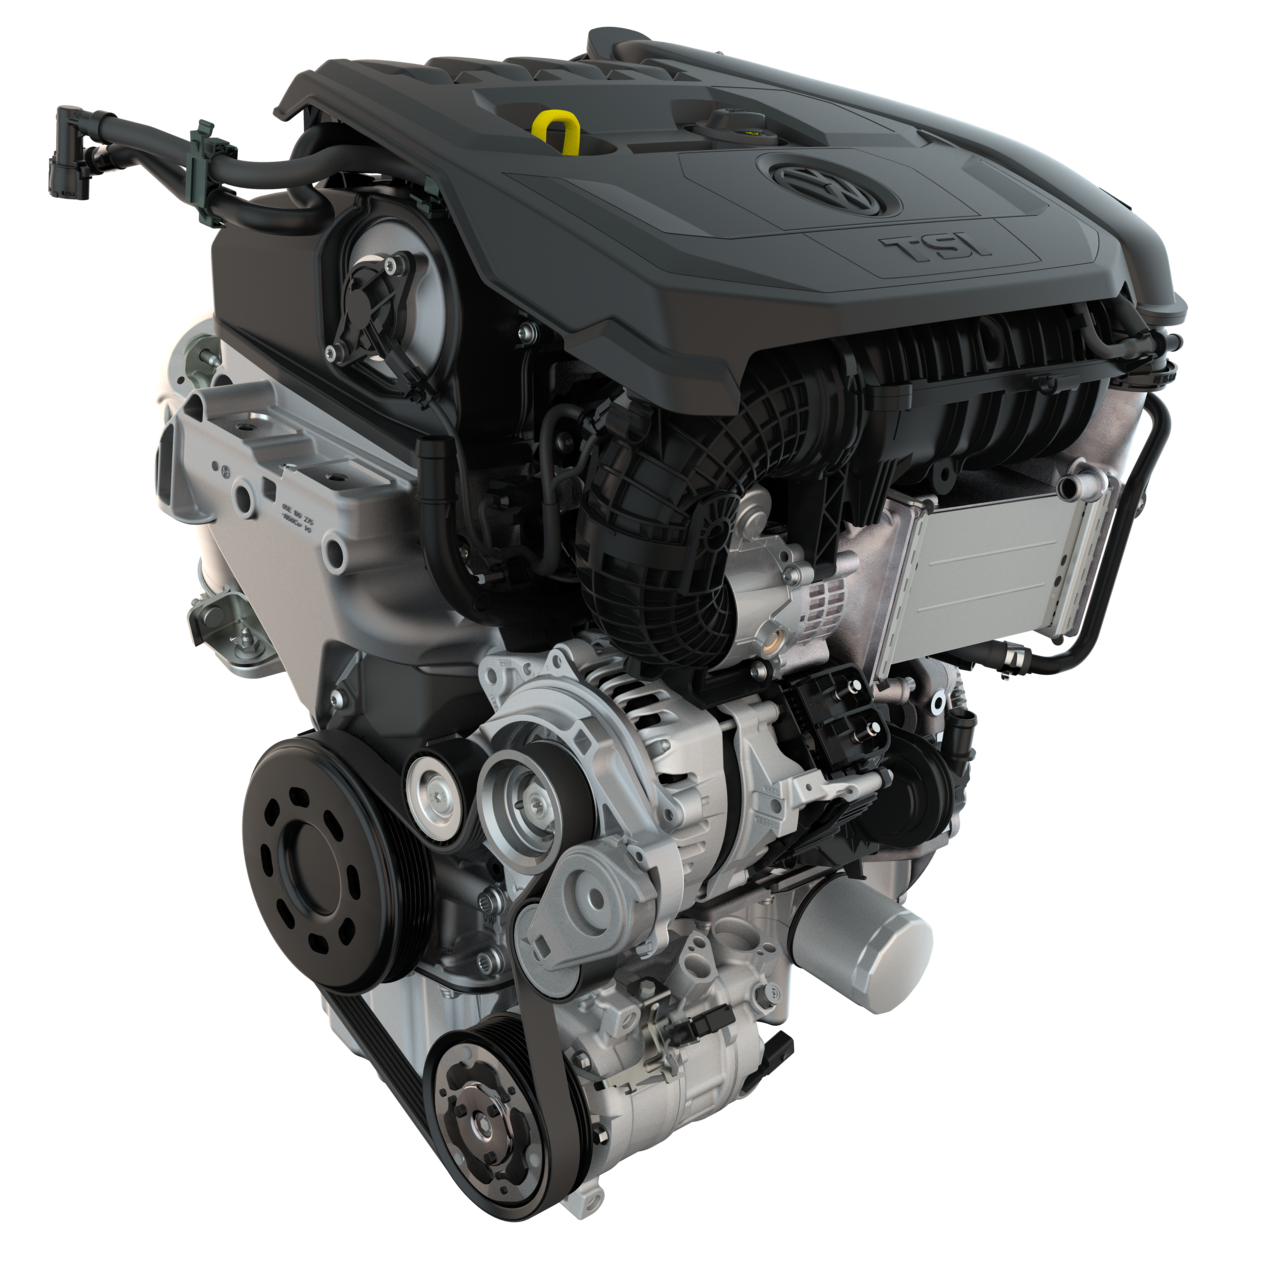 Le moteur EA211 est le moteur principal de la nouvelle génération de voitures VAG.